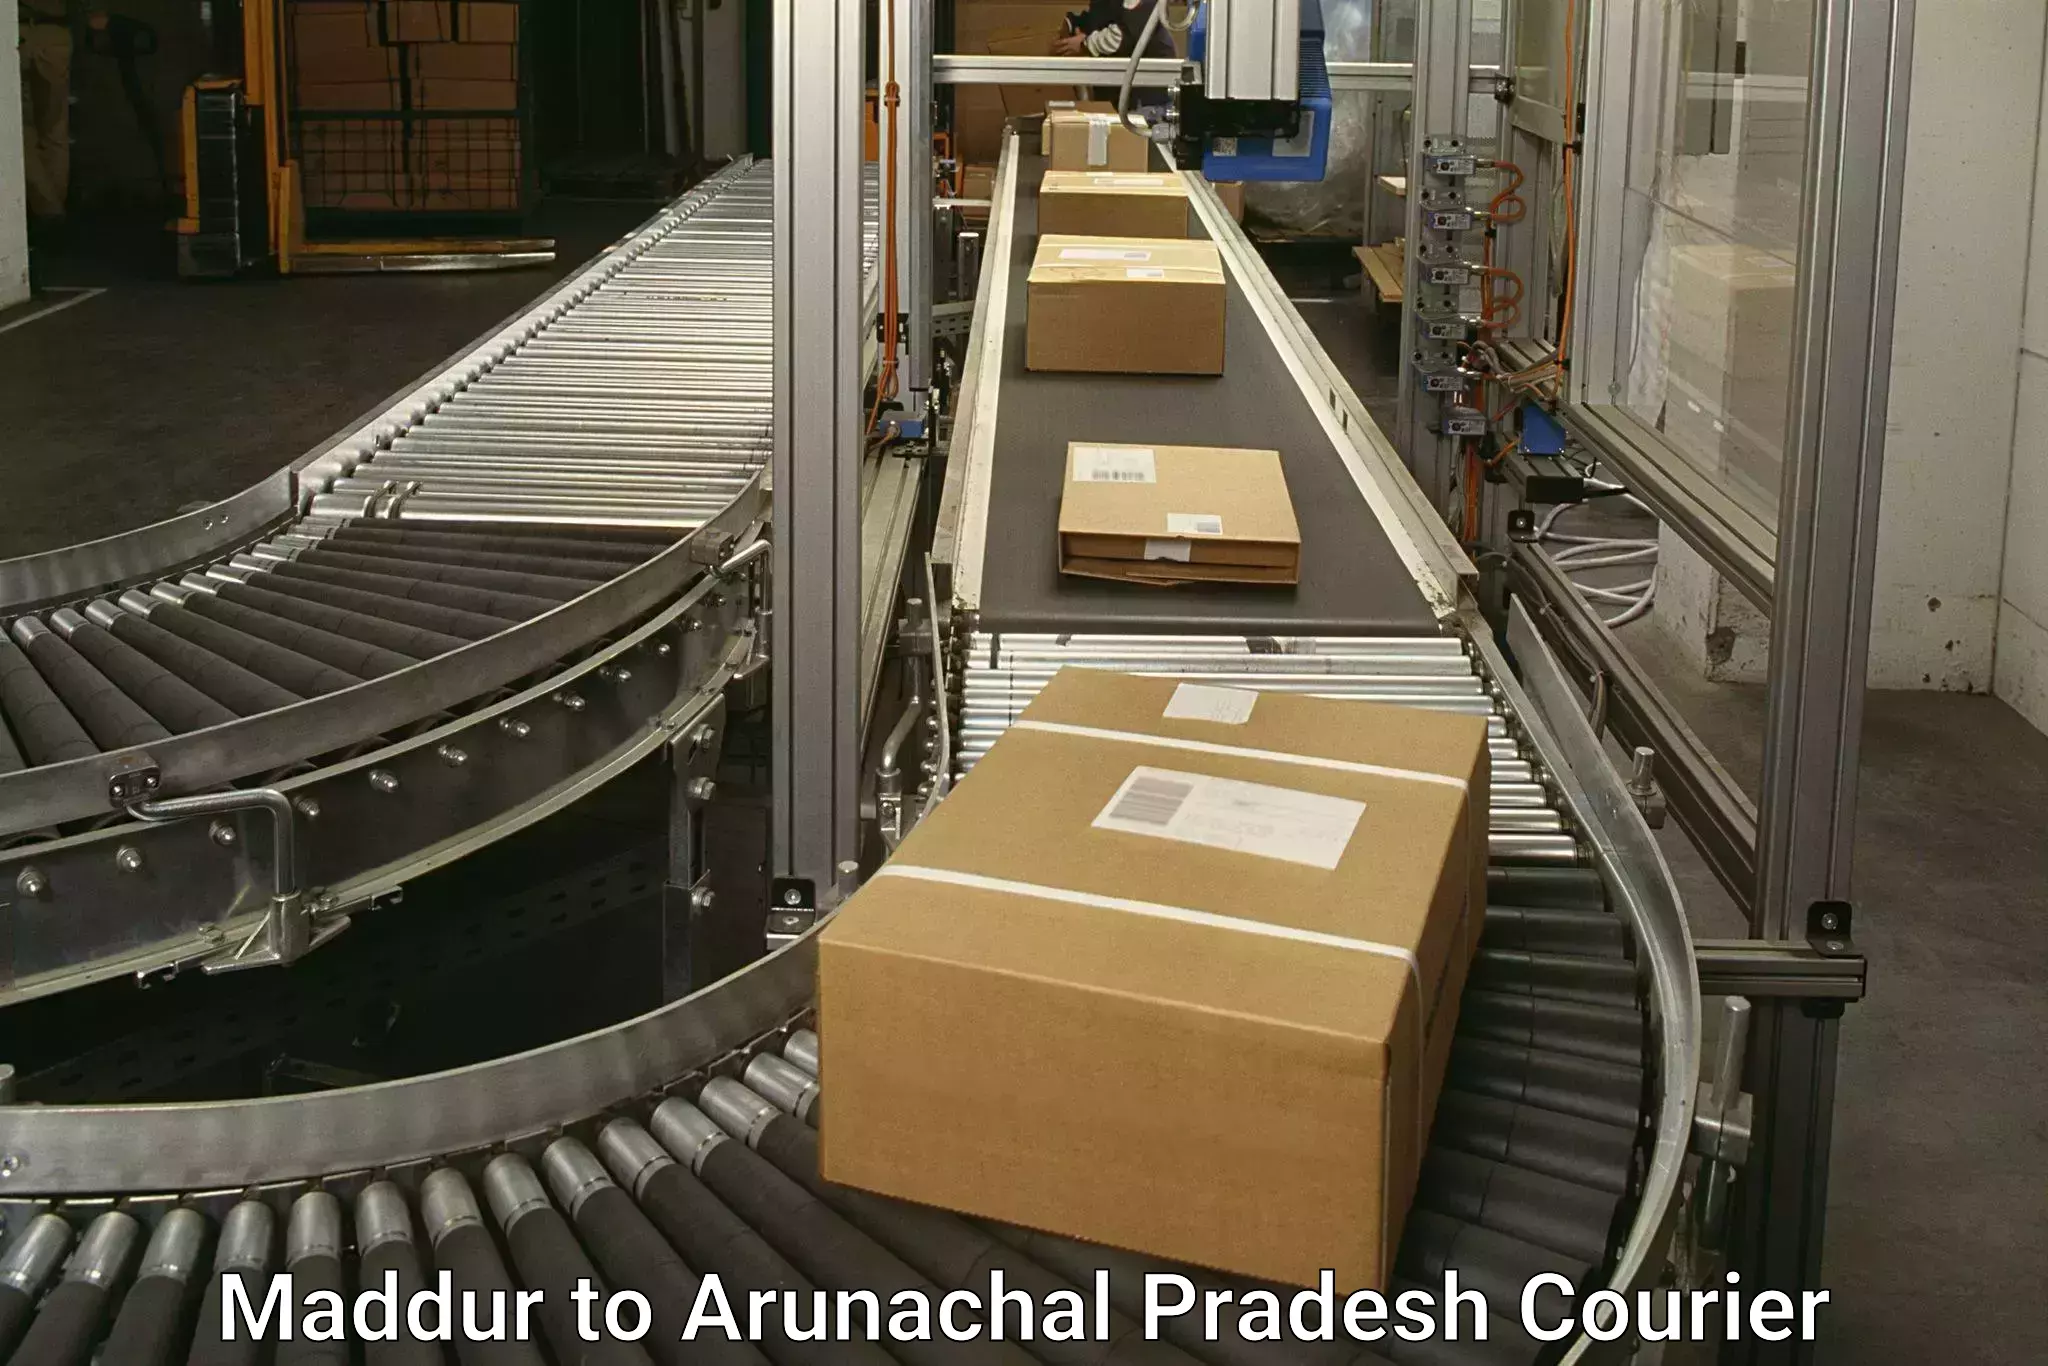 Cargo delivery service Maddur to Arunachal Pradesh